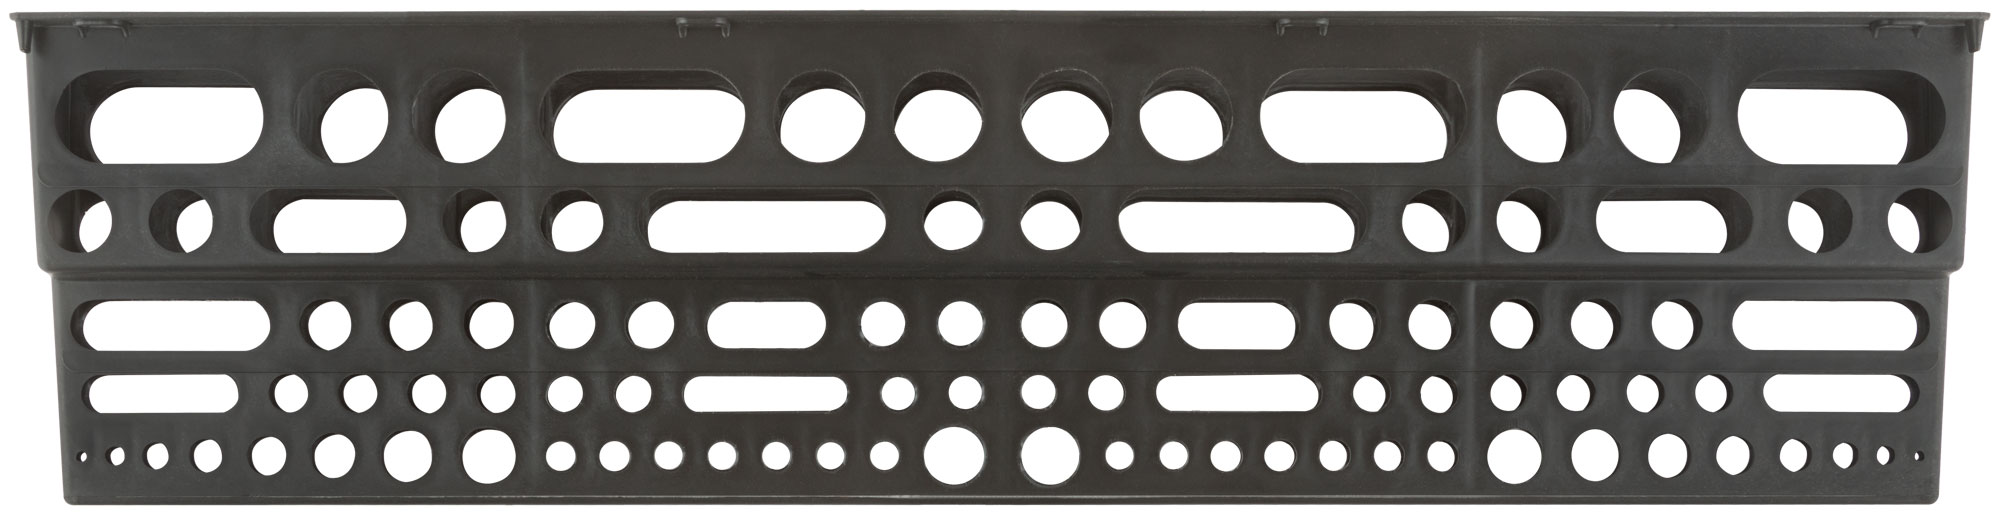 Полка для инструмента пластиковая черная, 96 отверстий, 610х150 мм